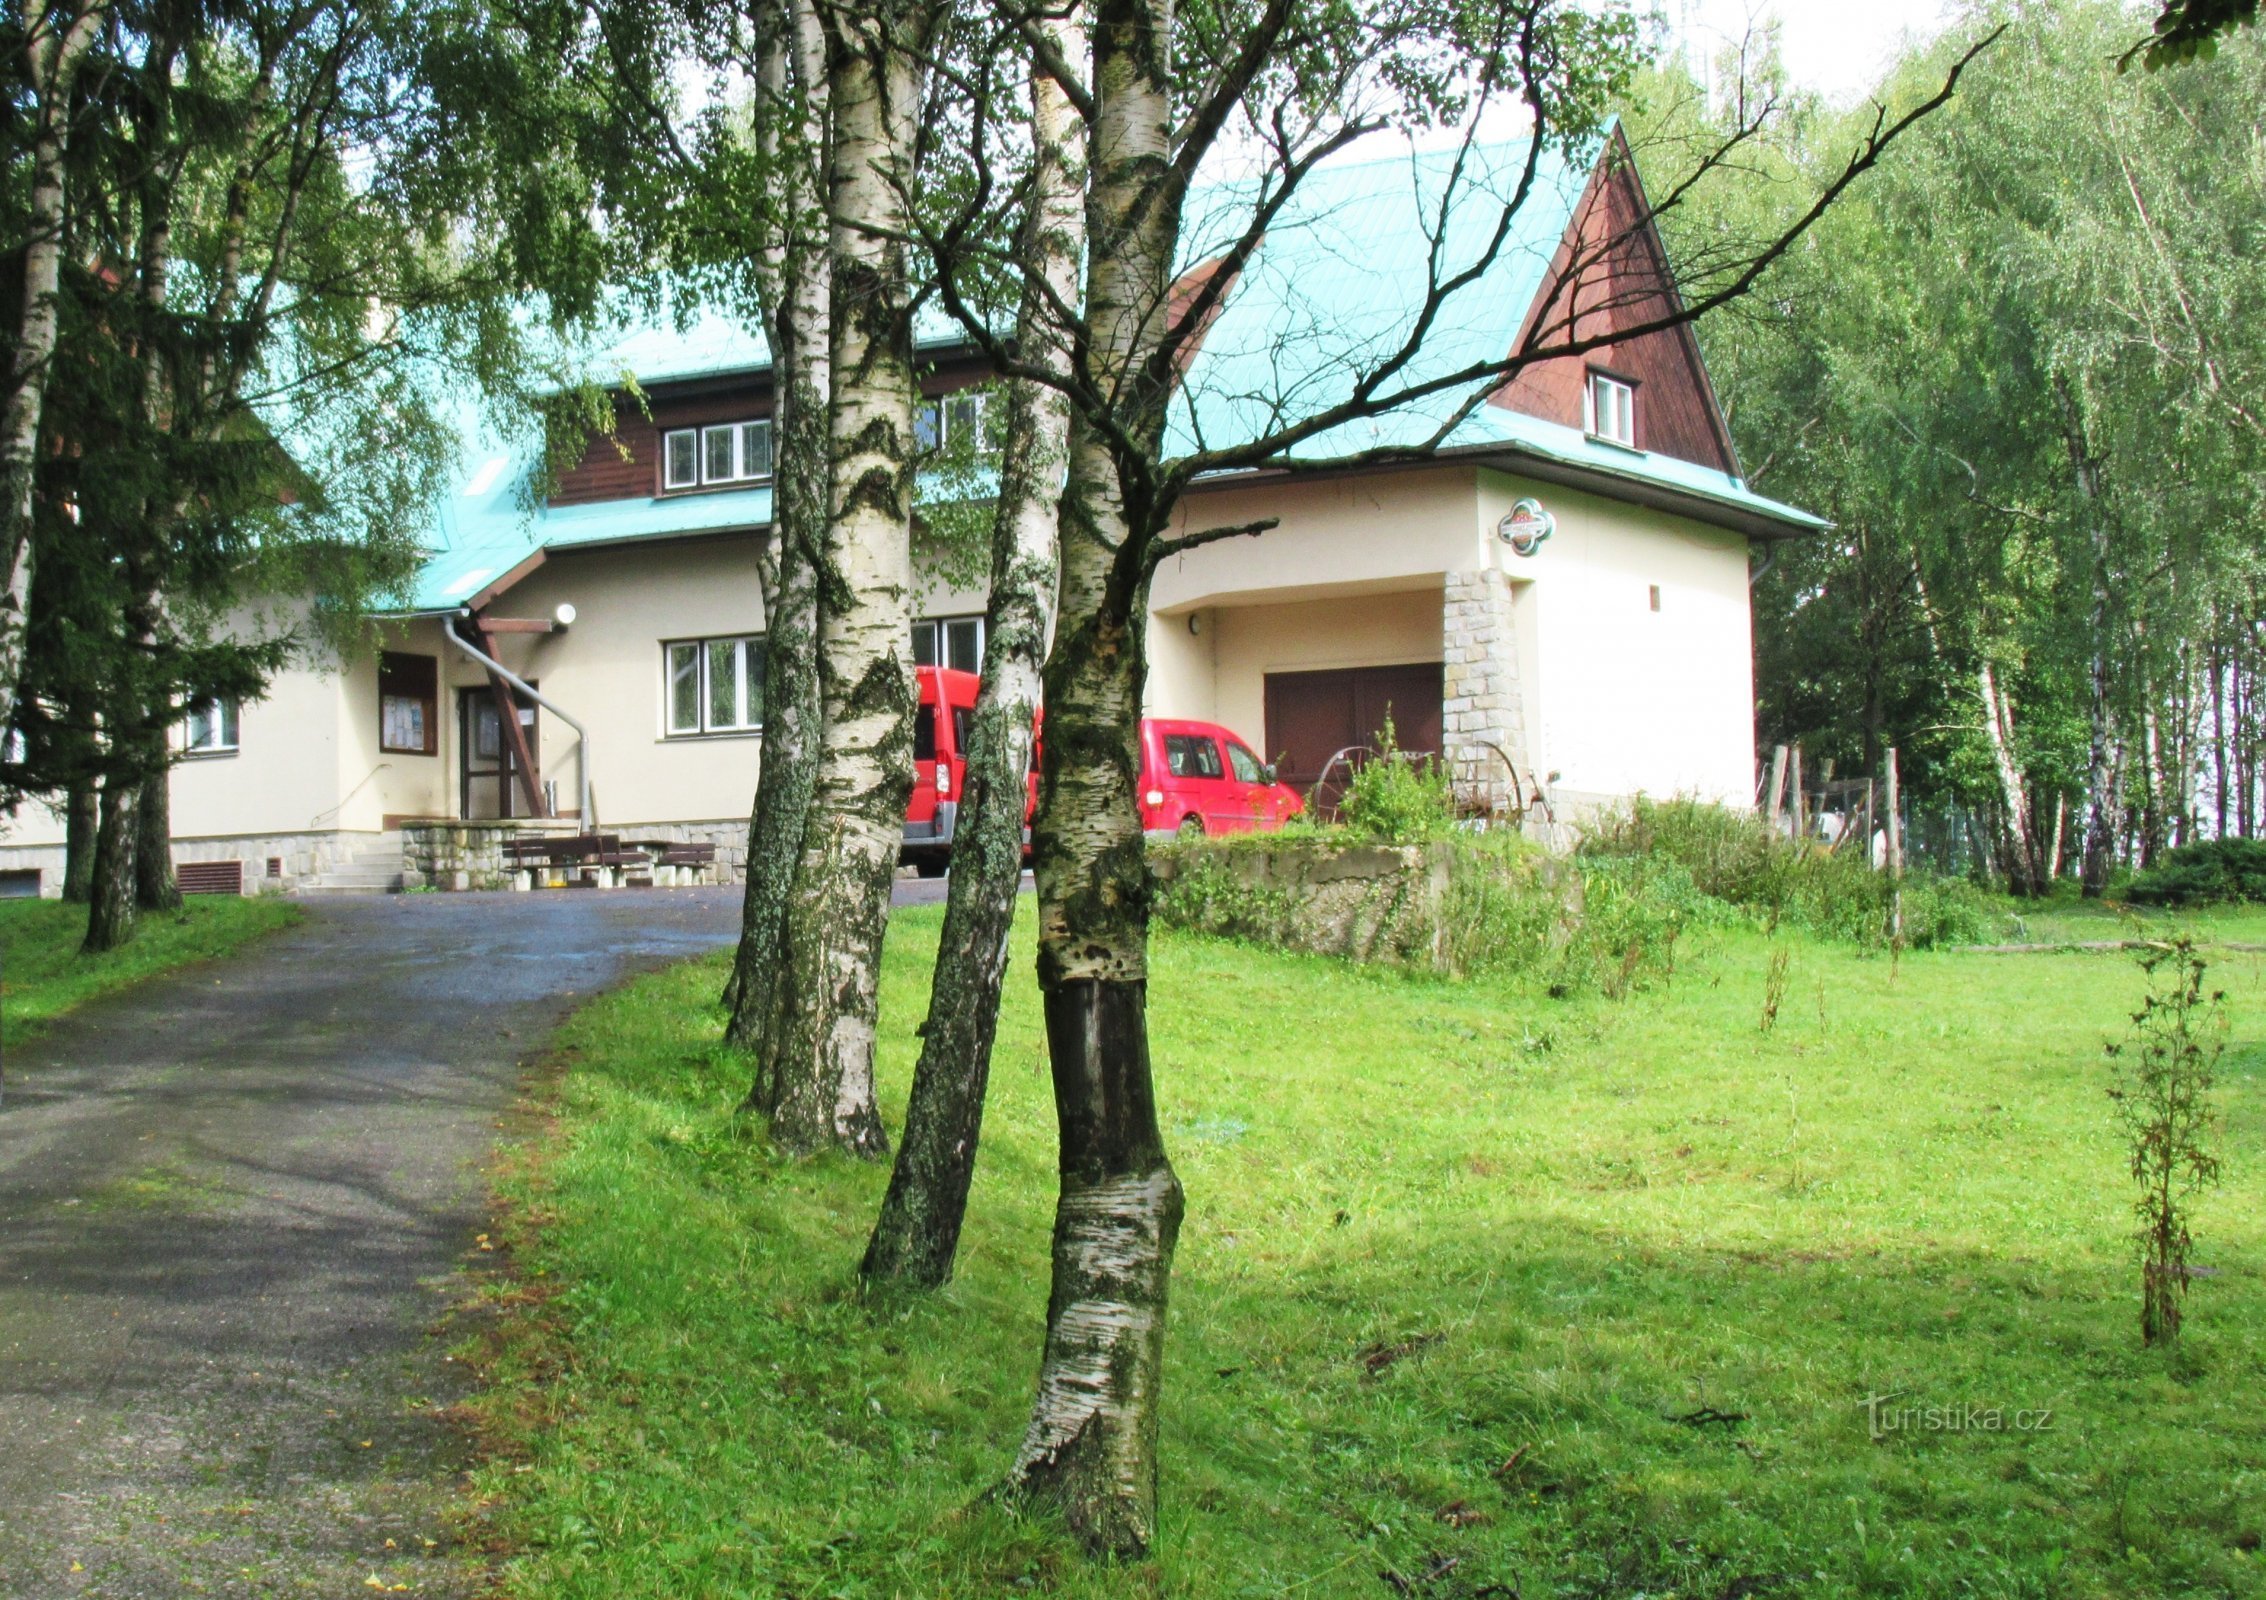 Ecofarm och boende Orlí vrch i bosättningen Rejvíz